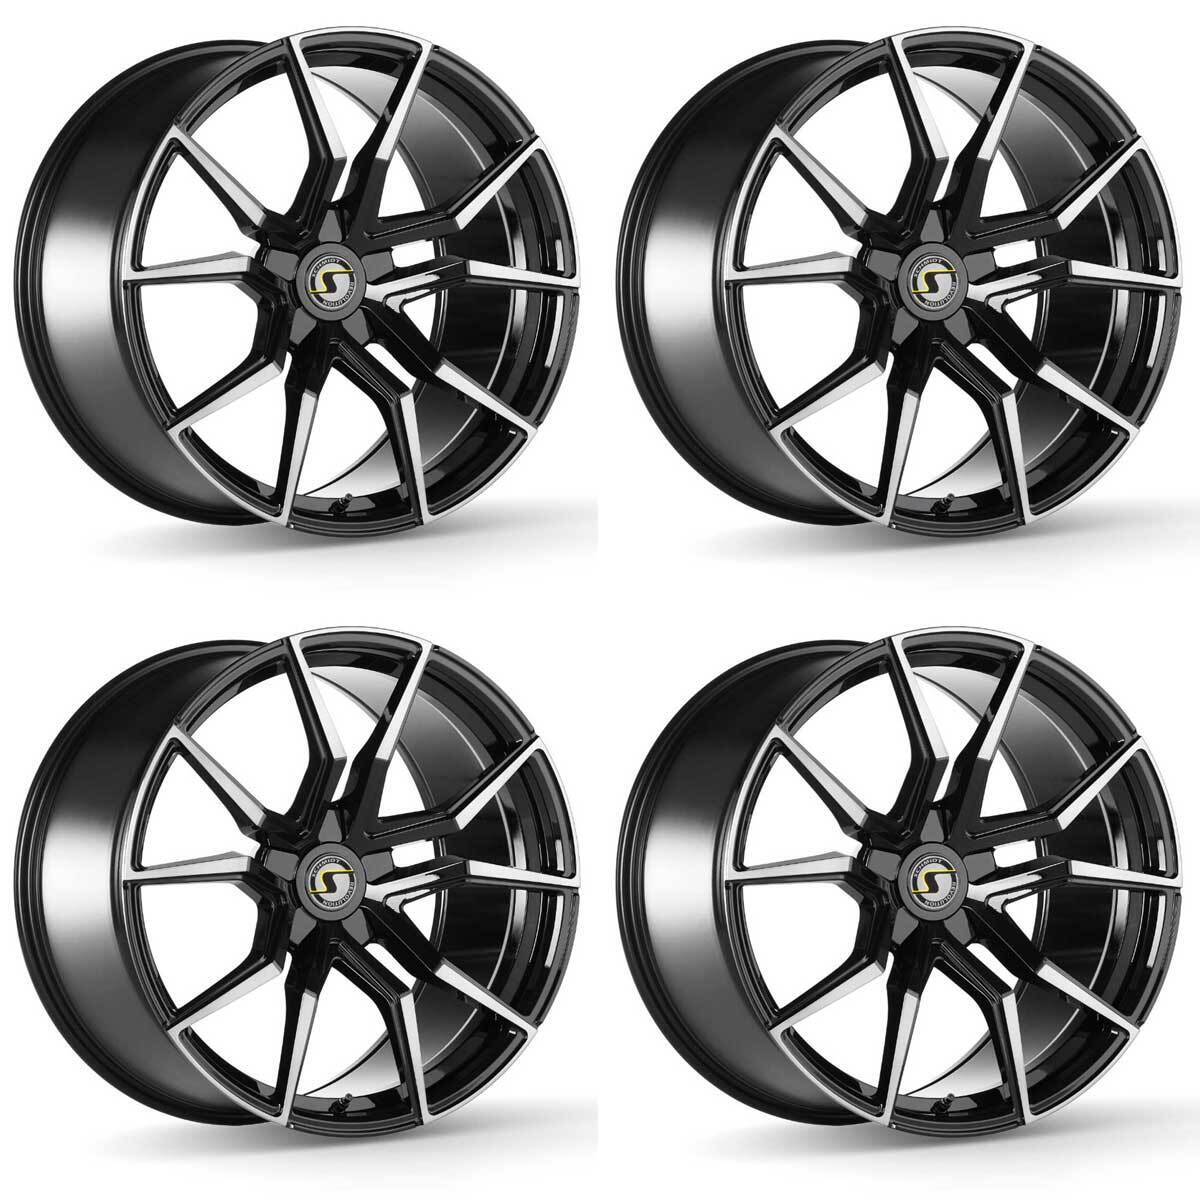 4 Schmidt Drago wheels 8.5Jx19 + 11.0Jx20 5x120,65 SW for Corvette Corvette C5 T